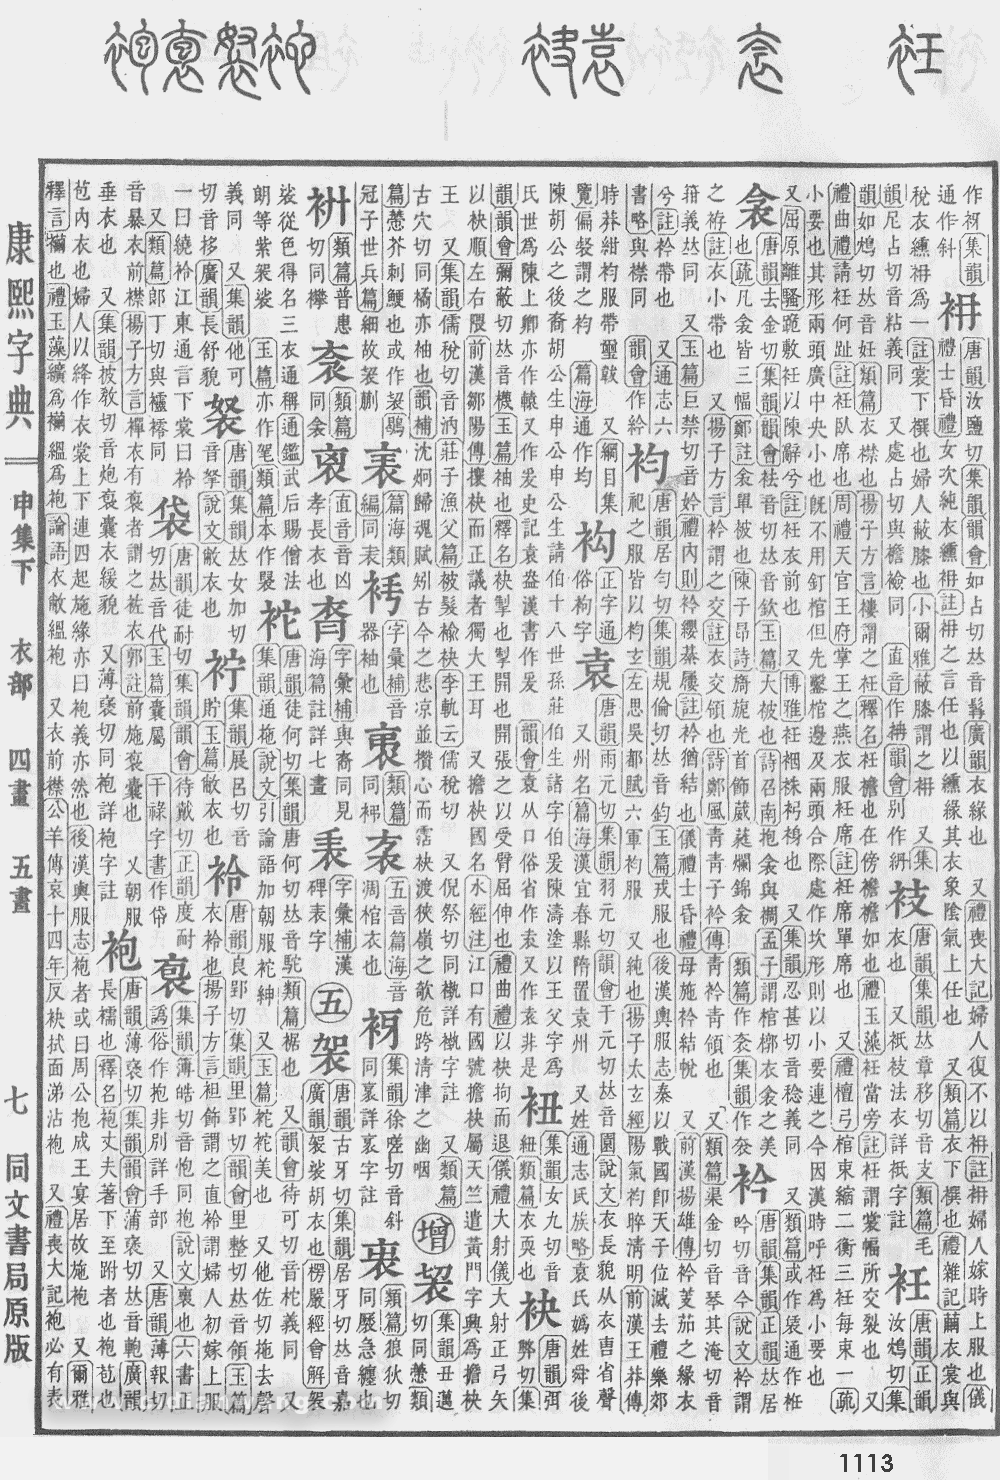 康熙字典掃描版第1113頁